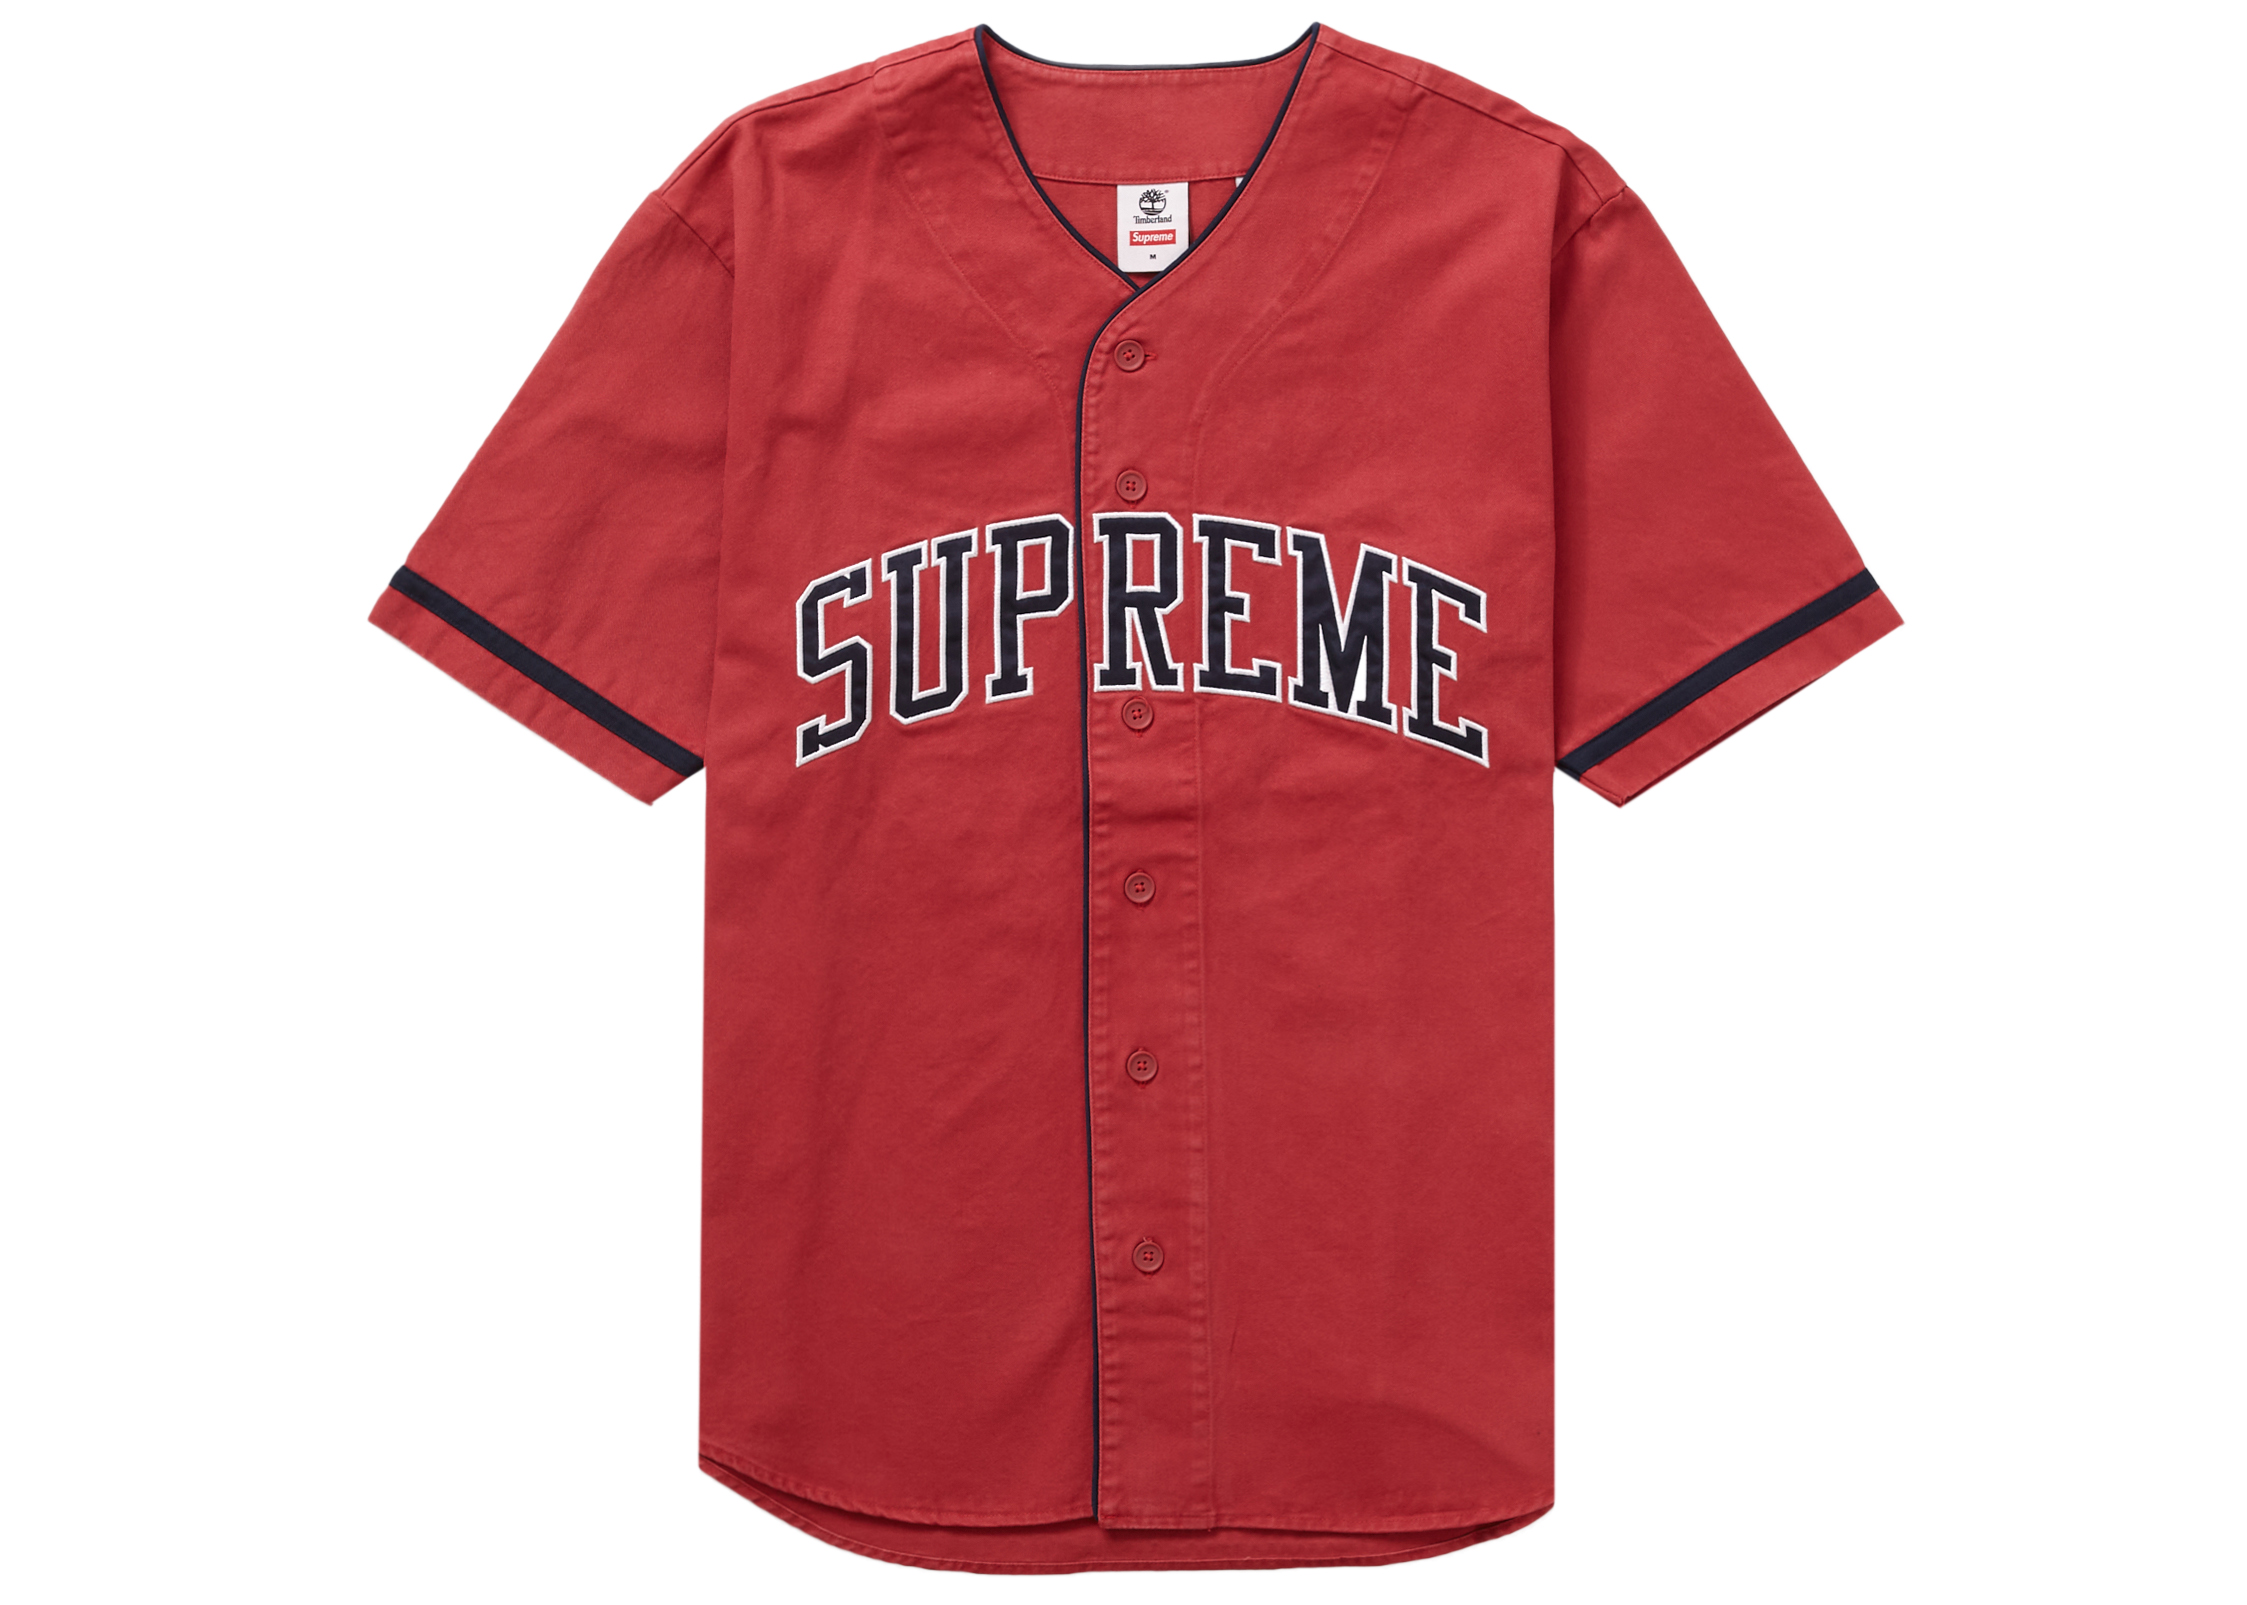 Supreme Timberland Baseball Jersey Red